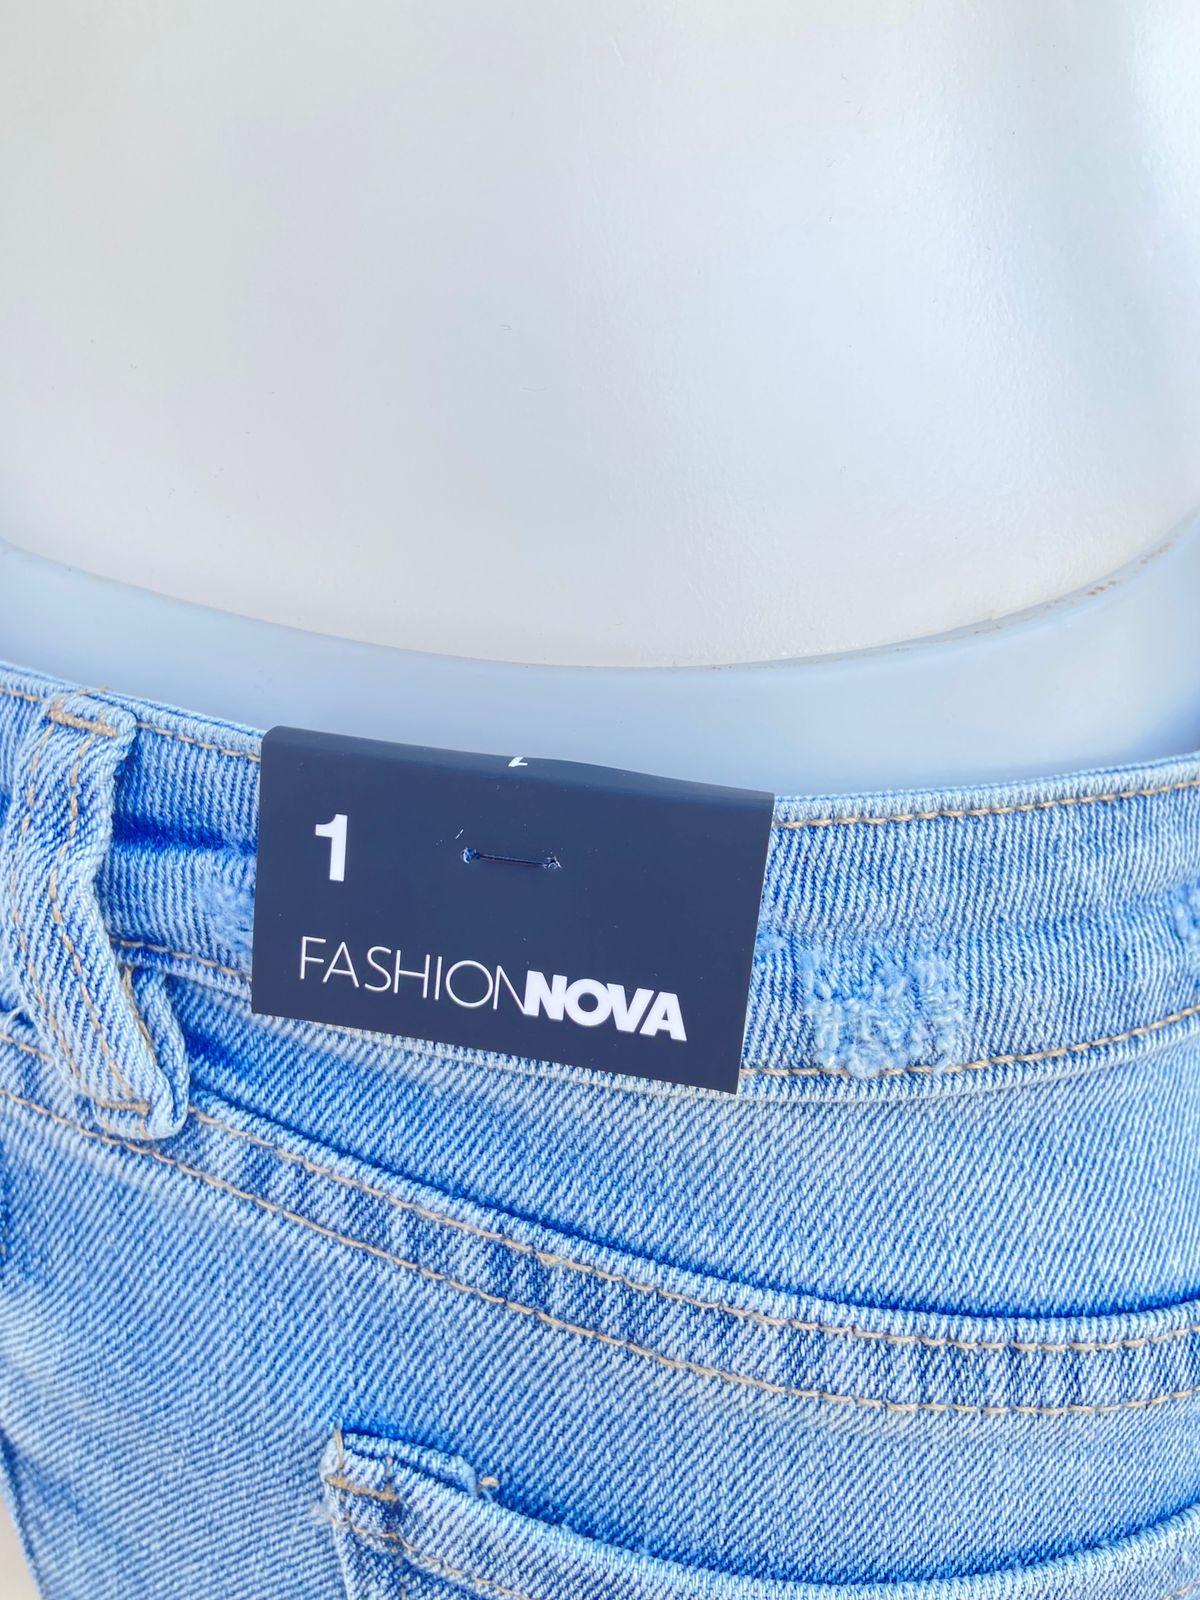 Pantalón jean Fashion Nova original abierto abajo y roto en el centro